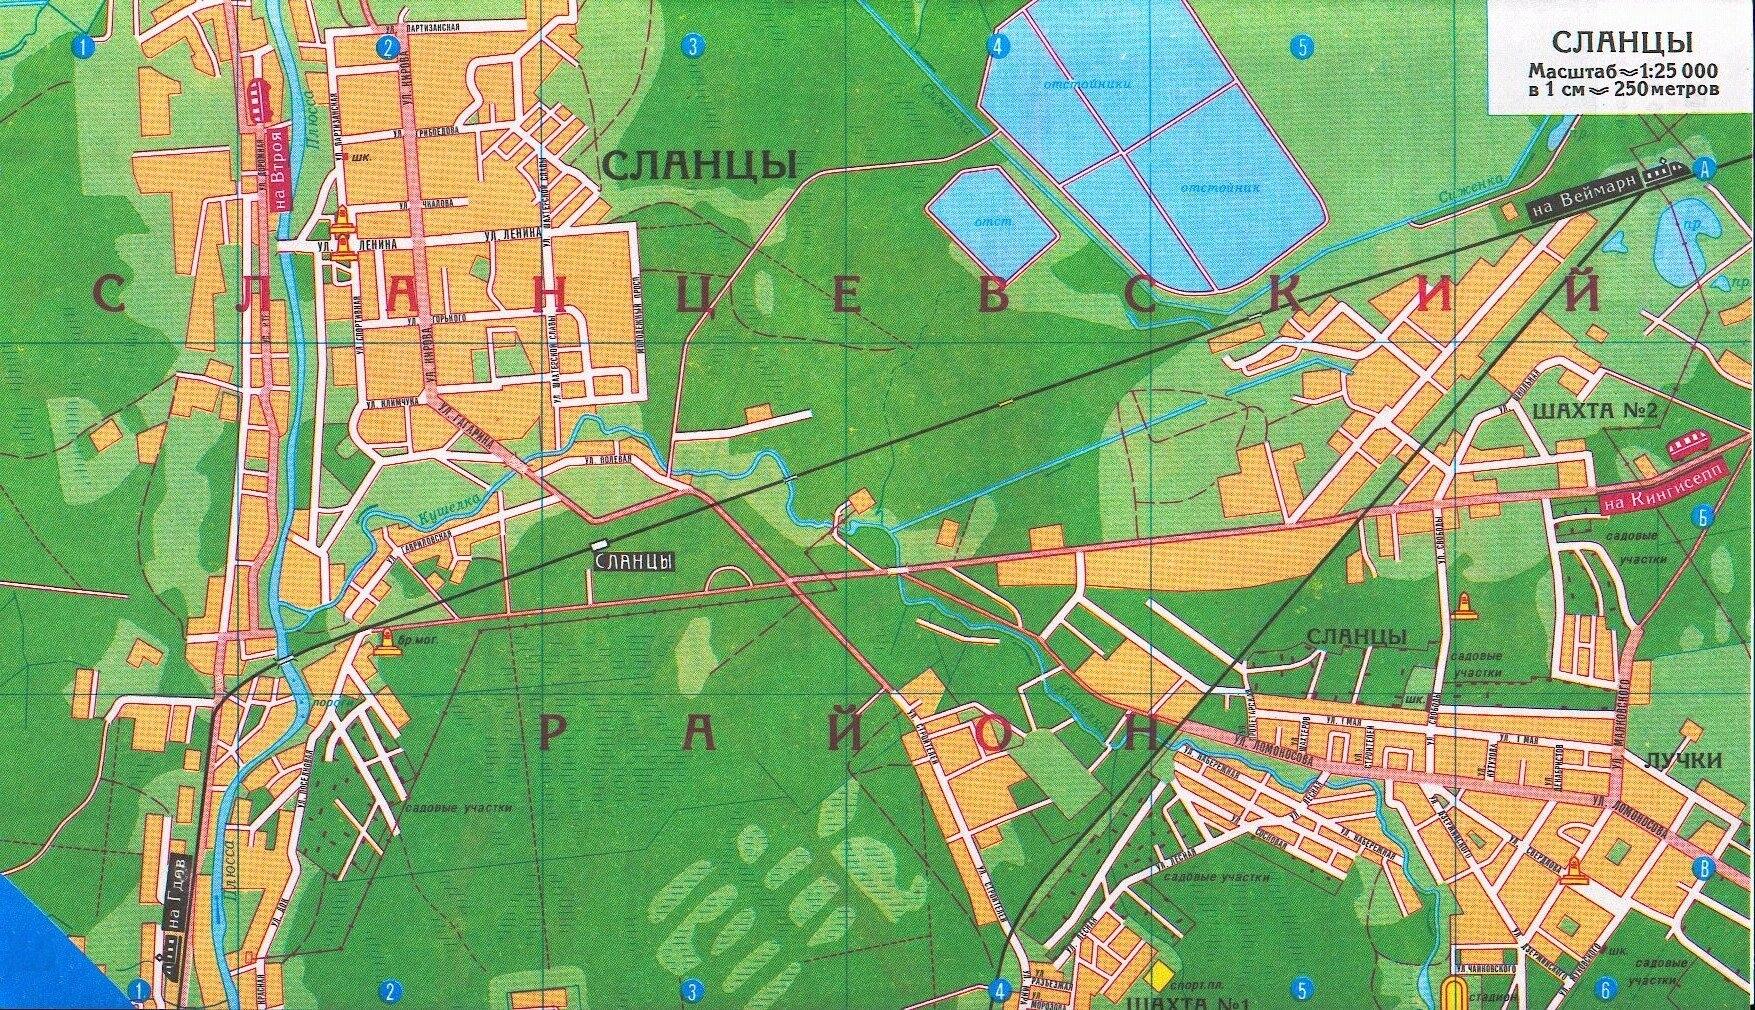 Сланцы на карте Ленинградской области